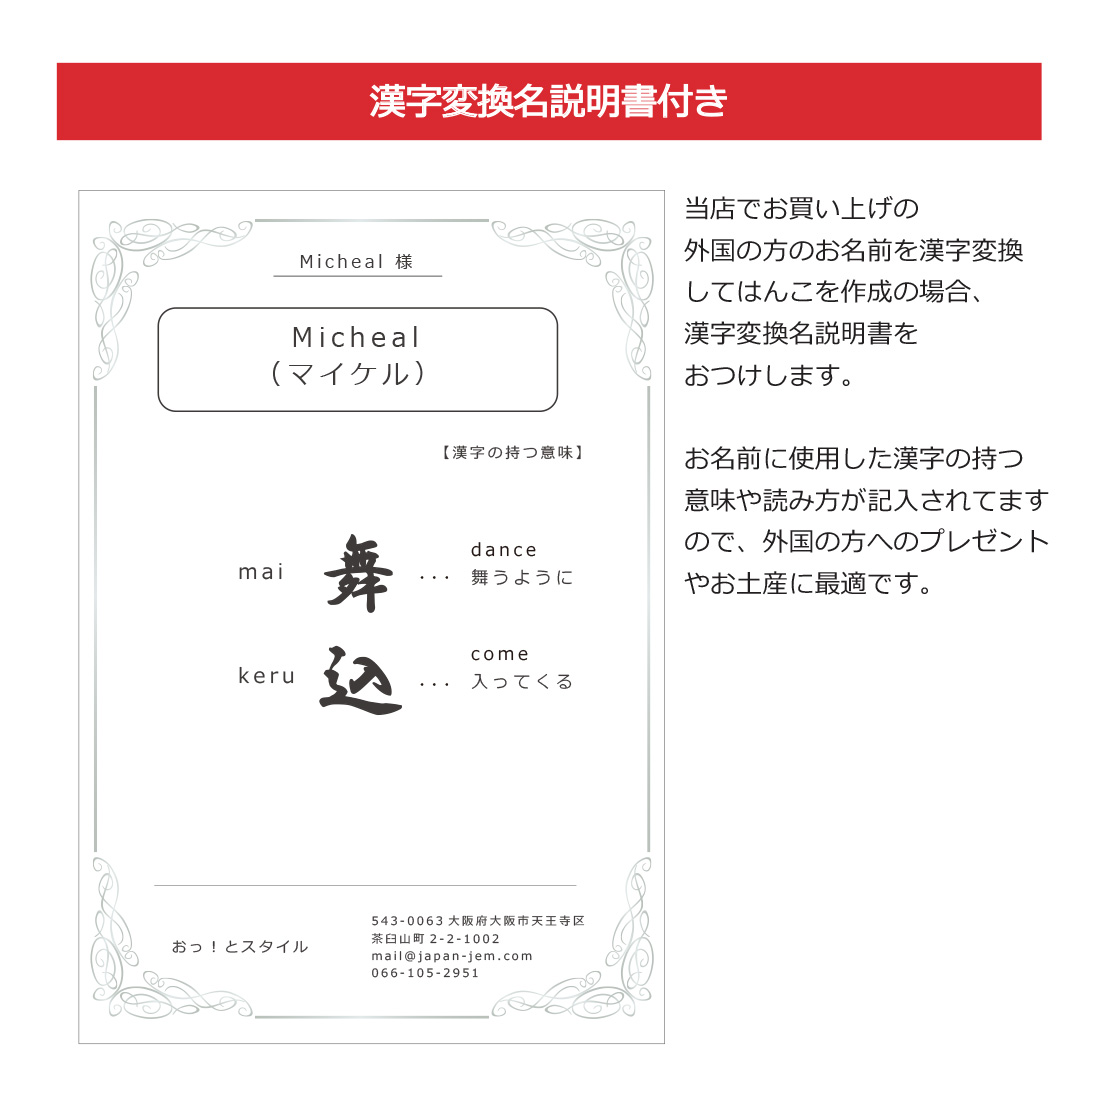 漢字変換彫刻をご希望の場合、漢字変換説明書付きでお土産にもおすすめ。